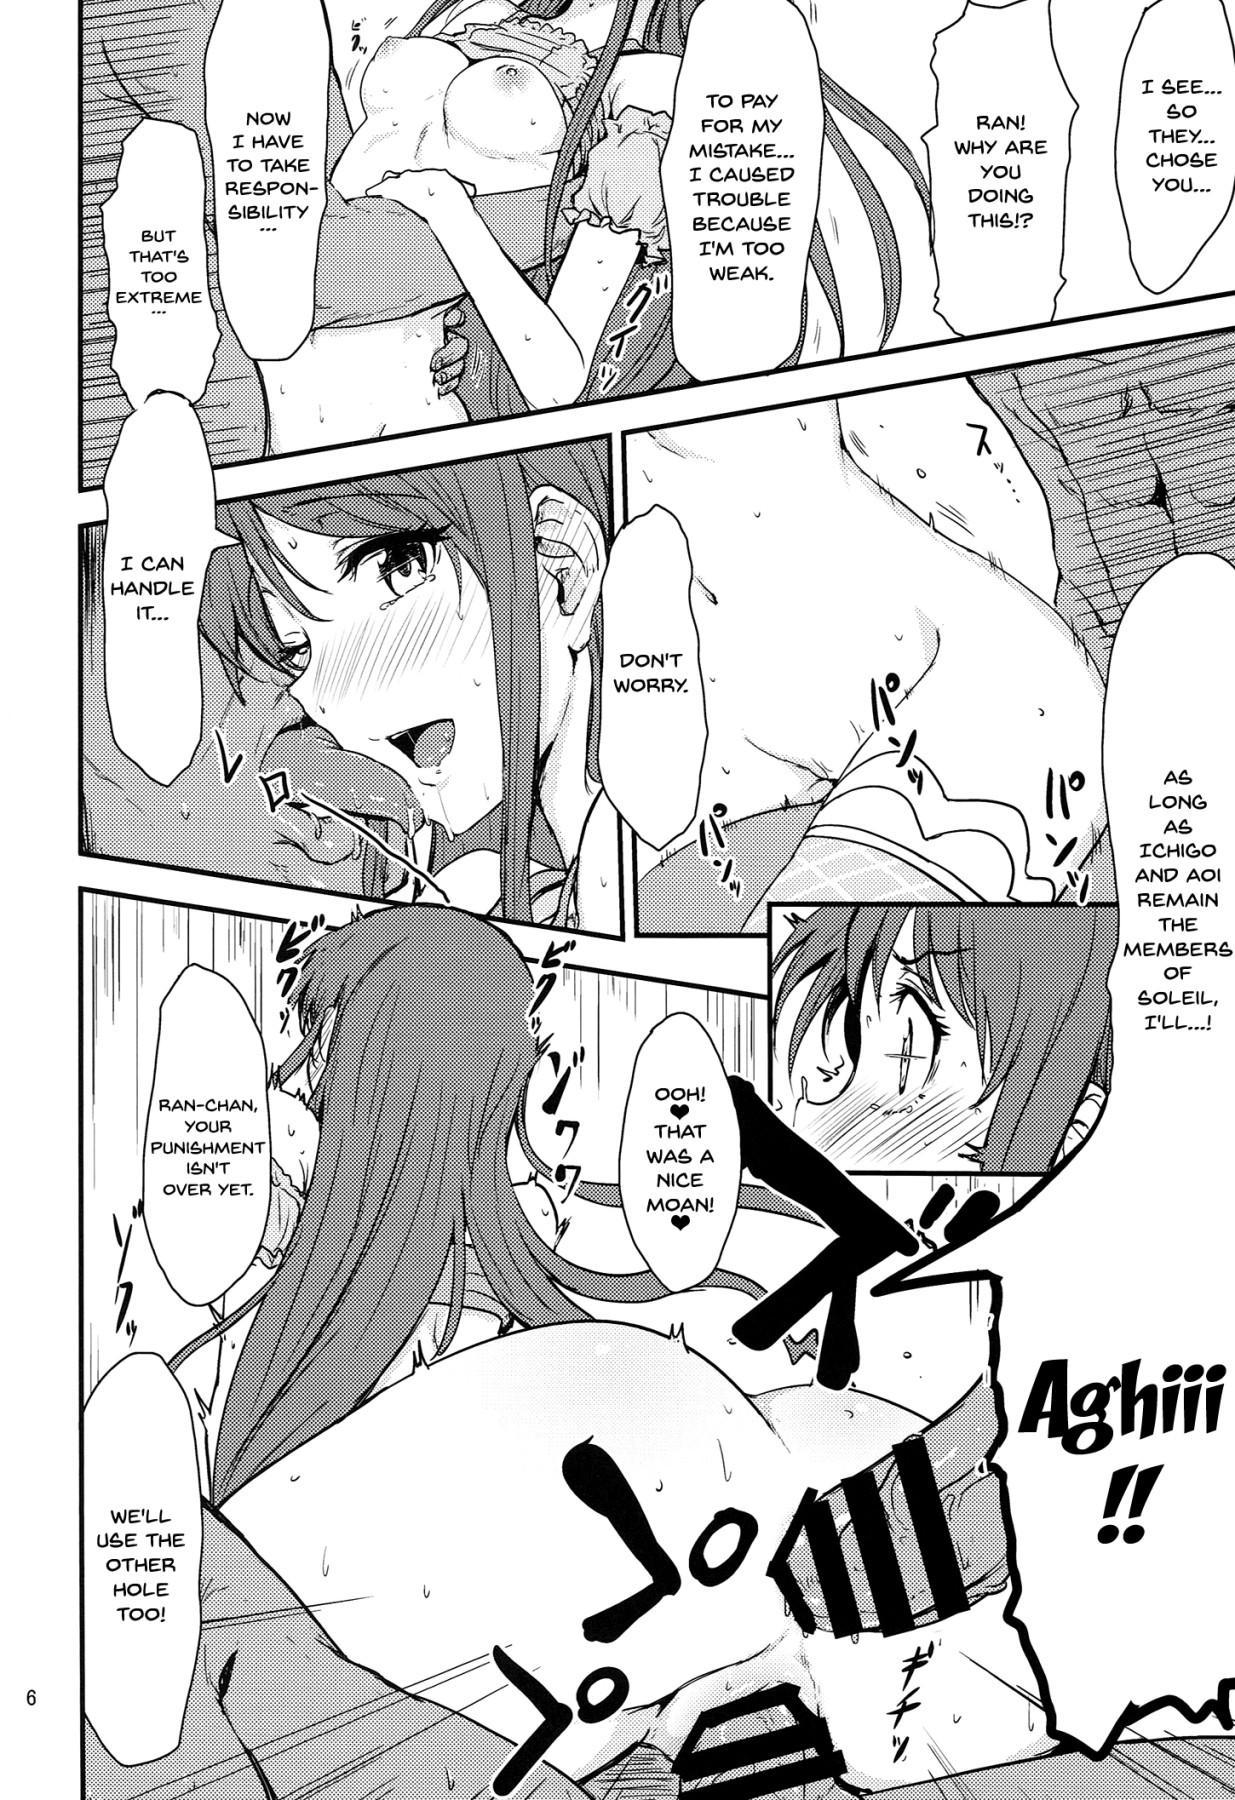 Rubbing Soreyuke tristar - Aikatsu Moan - Page 5